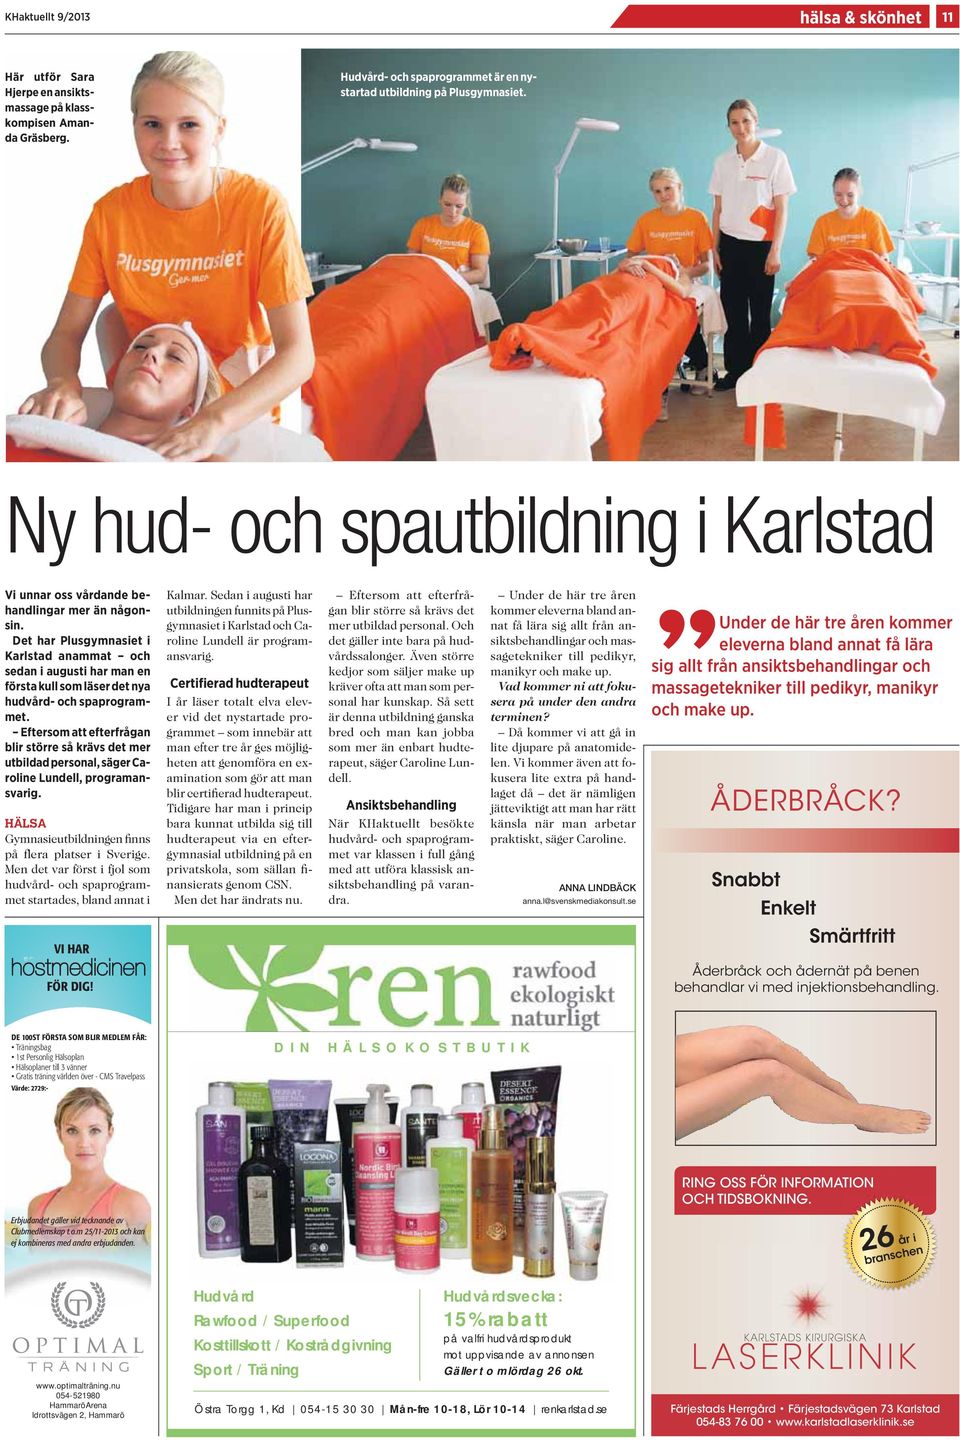 Det har Plusgymnasiet i Karlstad anammat och sedan i augusti har man en första kull som läser det nya hudvård- och spaprogrammet.